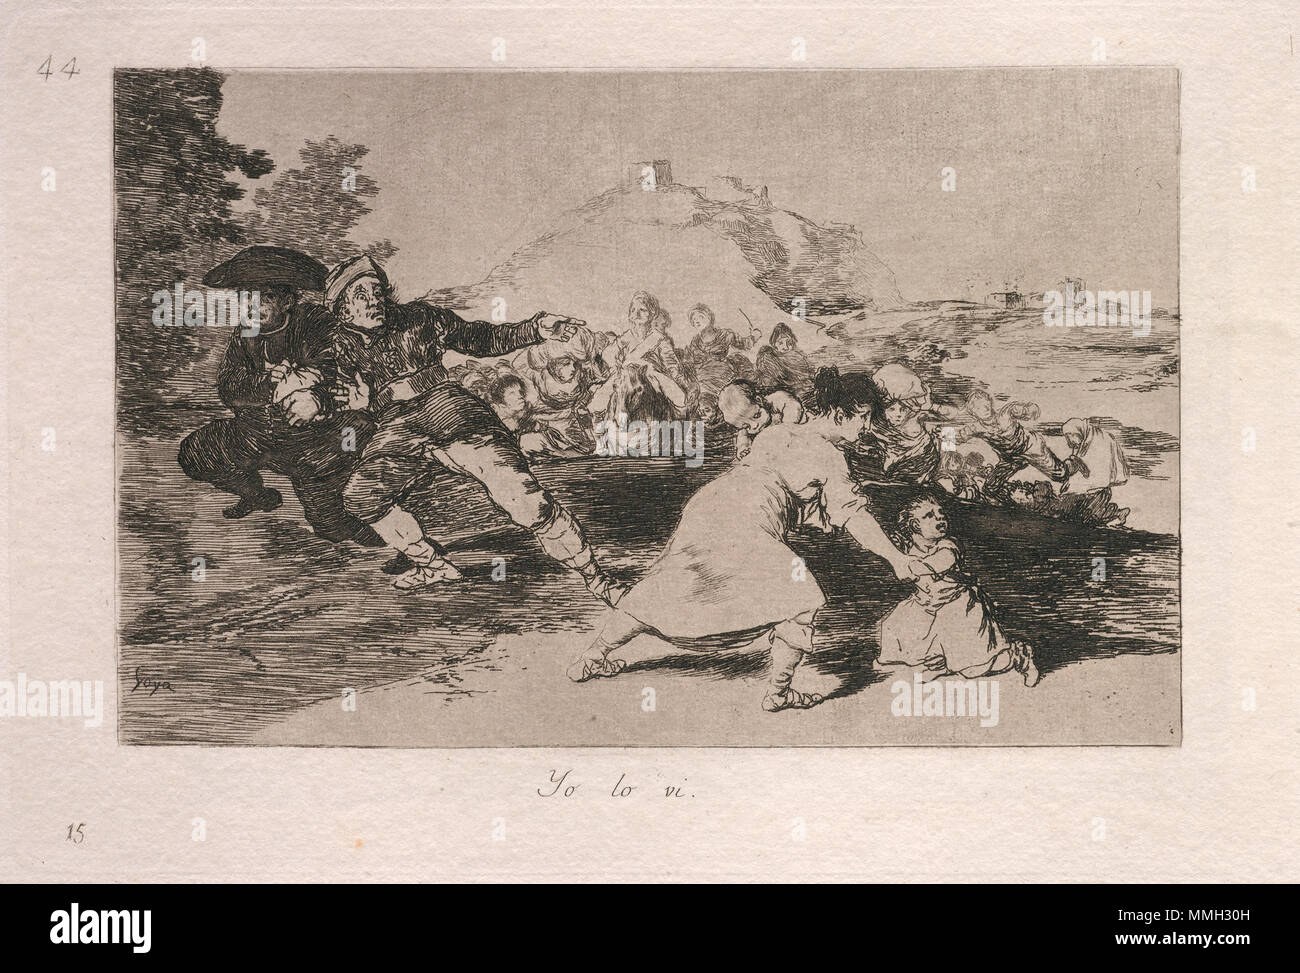 Francisco de Goya, Yo lo vi (je l'ai vu), espagnol, 1746 - 1828, publié 1863, eau-forte, pointe sèche et burin, Rosenwald Collection Goya - Yo lo vi (je l'ai vu) Banque D'Images